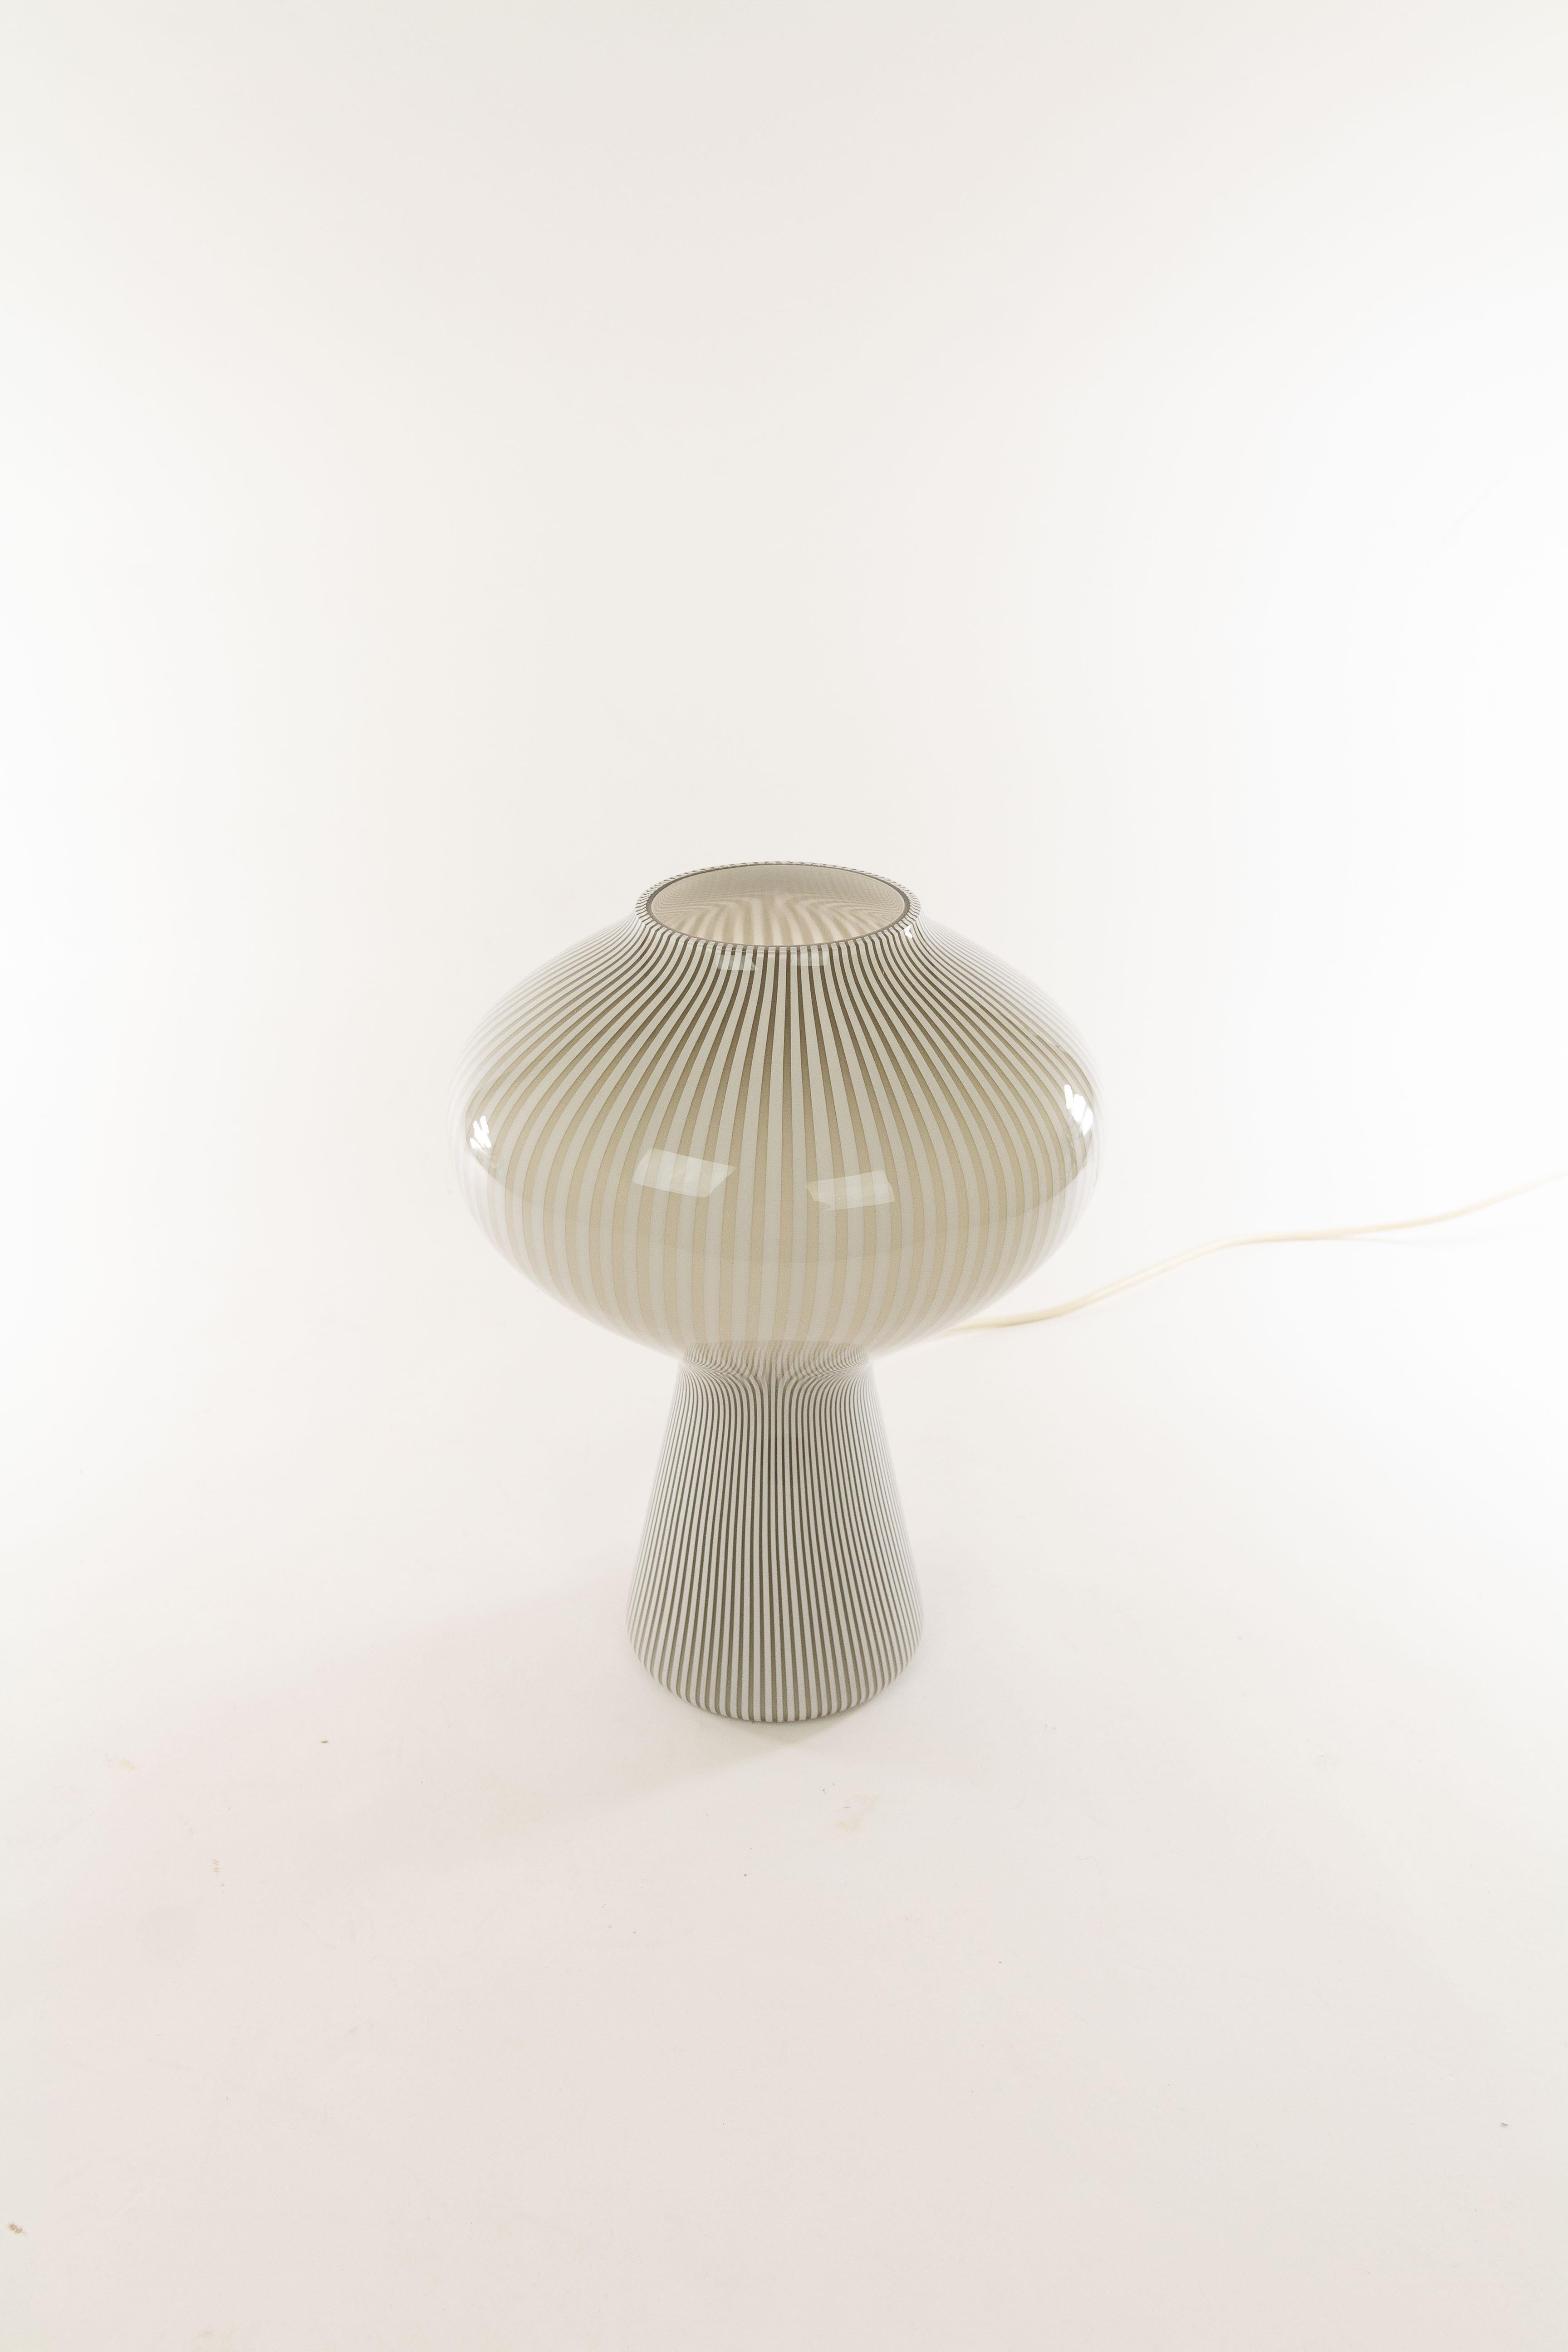 Mid-20th Century Striped Fungo Table Lamp by Massimo Vignelli for Venini, 1950s